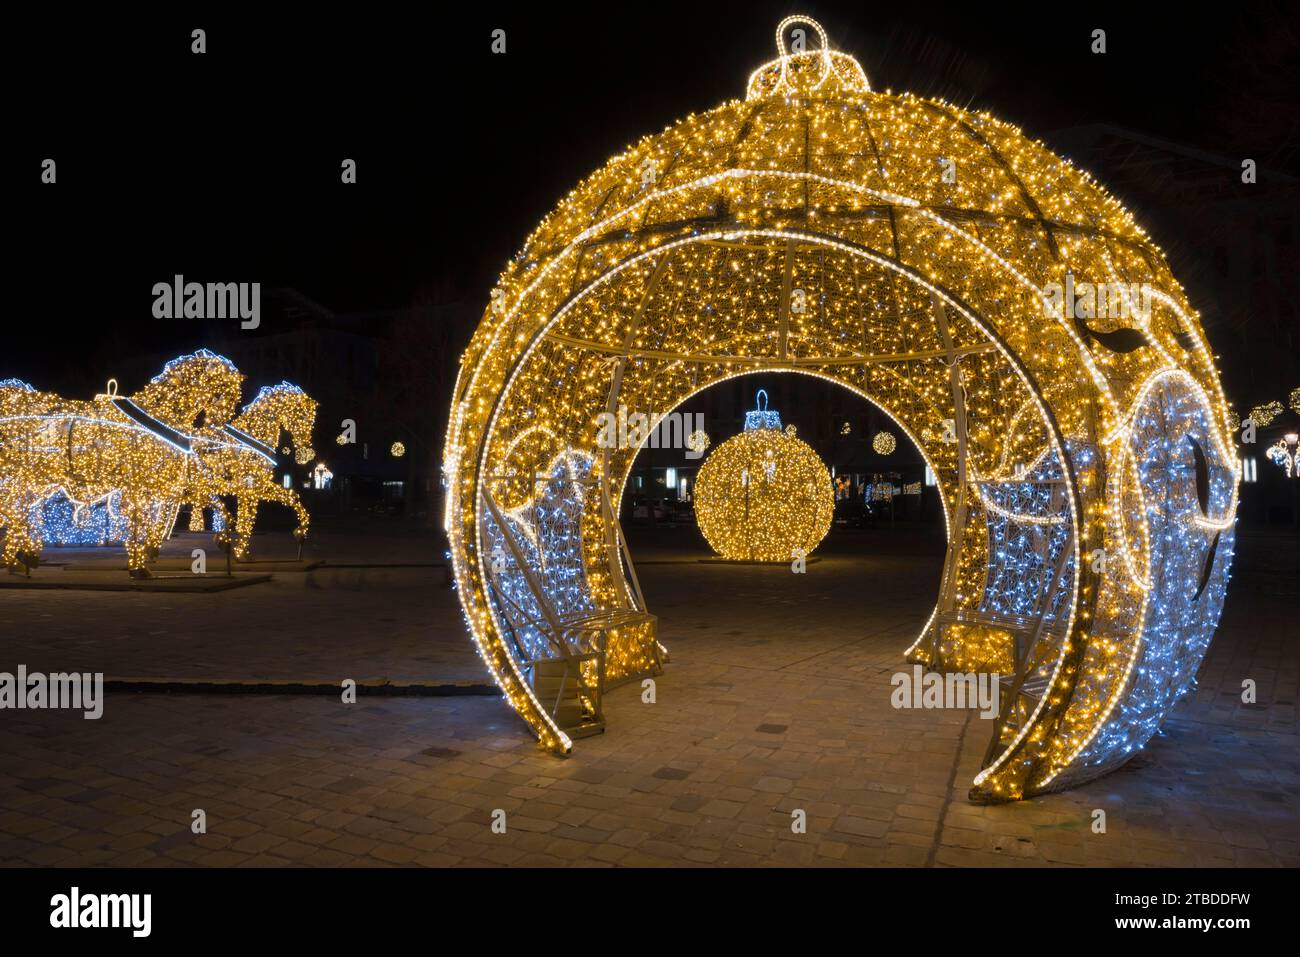 Goldene Pferdefiguren, begehbare beleuchtete Kugel, Domplatz, Welt der Lichter, Magdeburg, die umfangreichste Weihnachts- und Winterbeleuchtung in Stockfoto